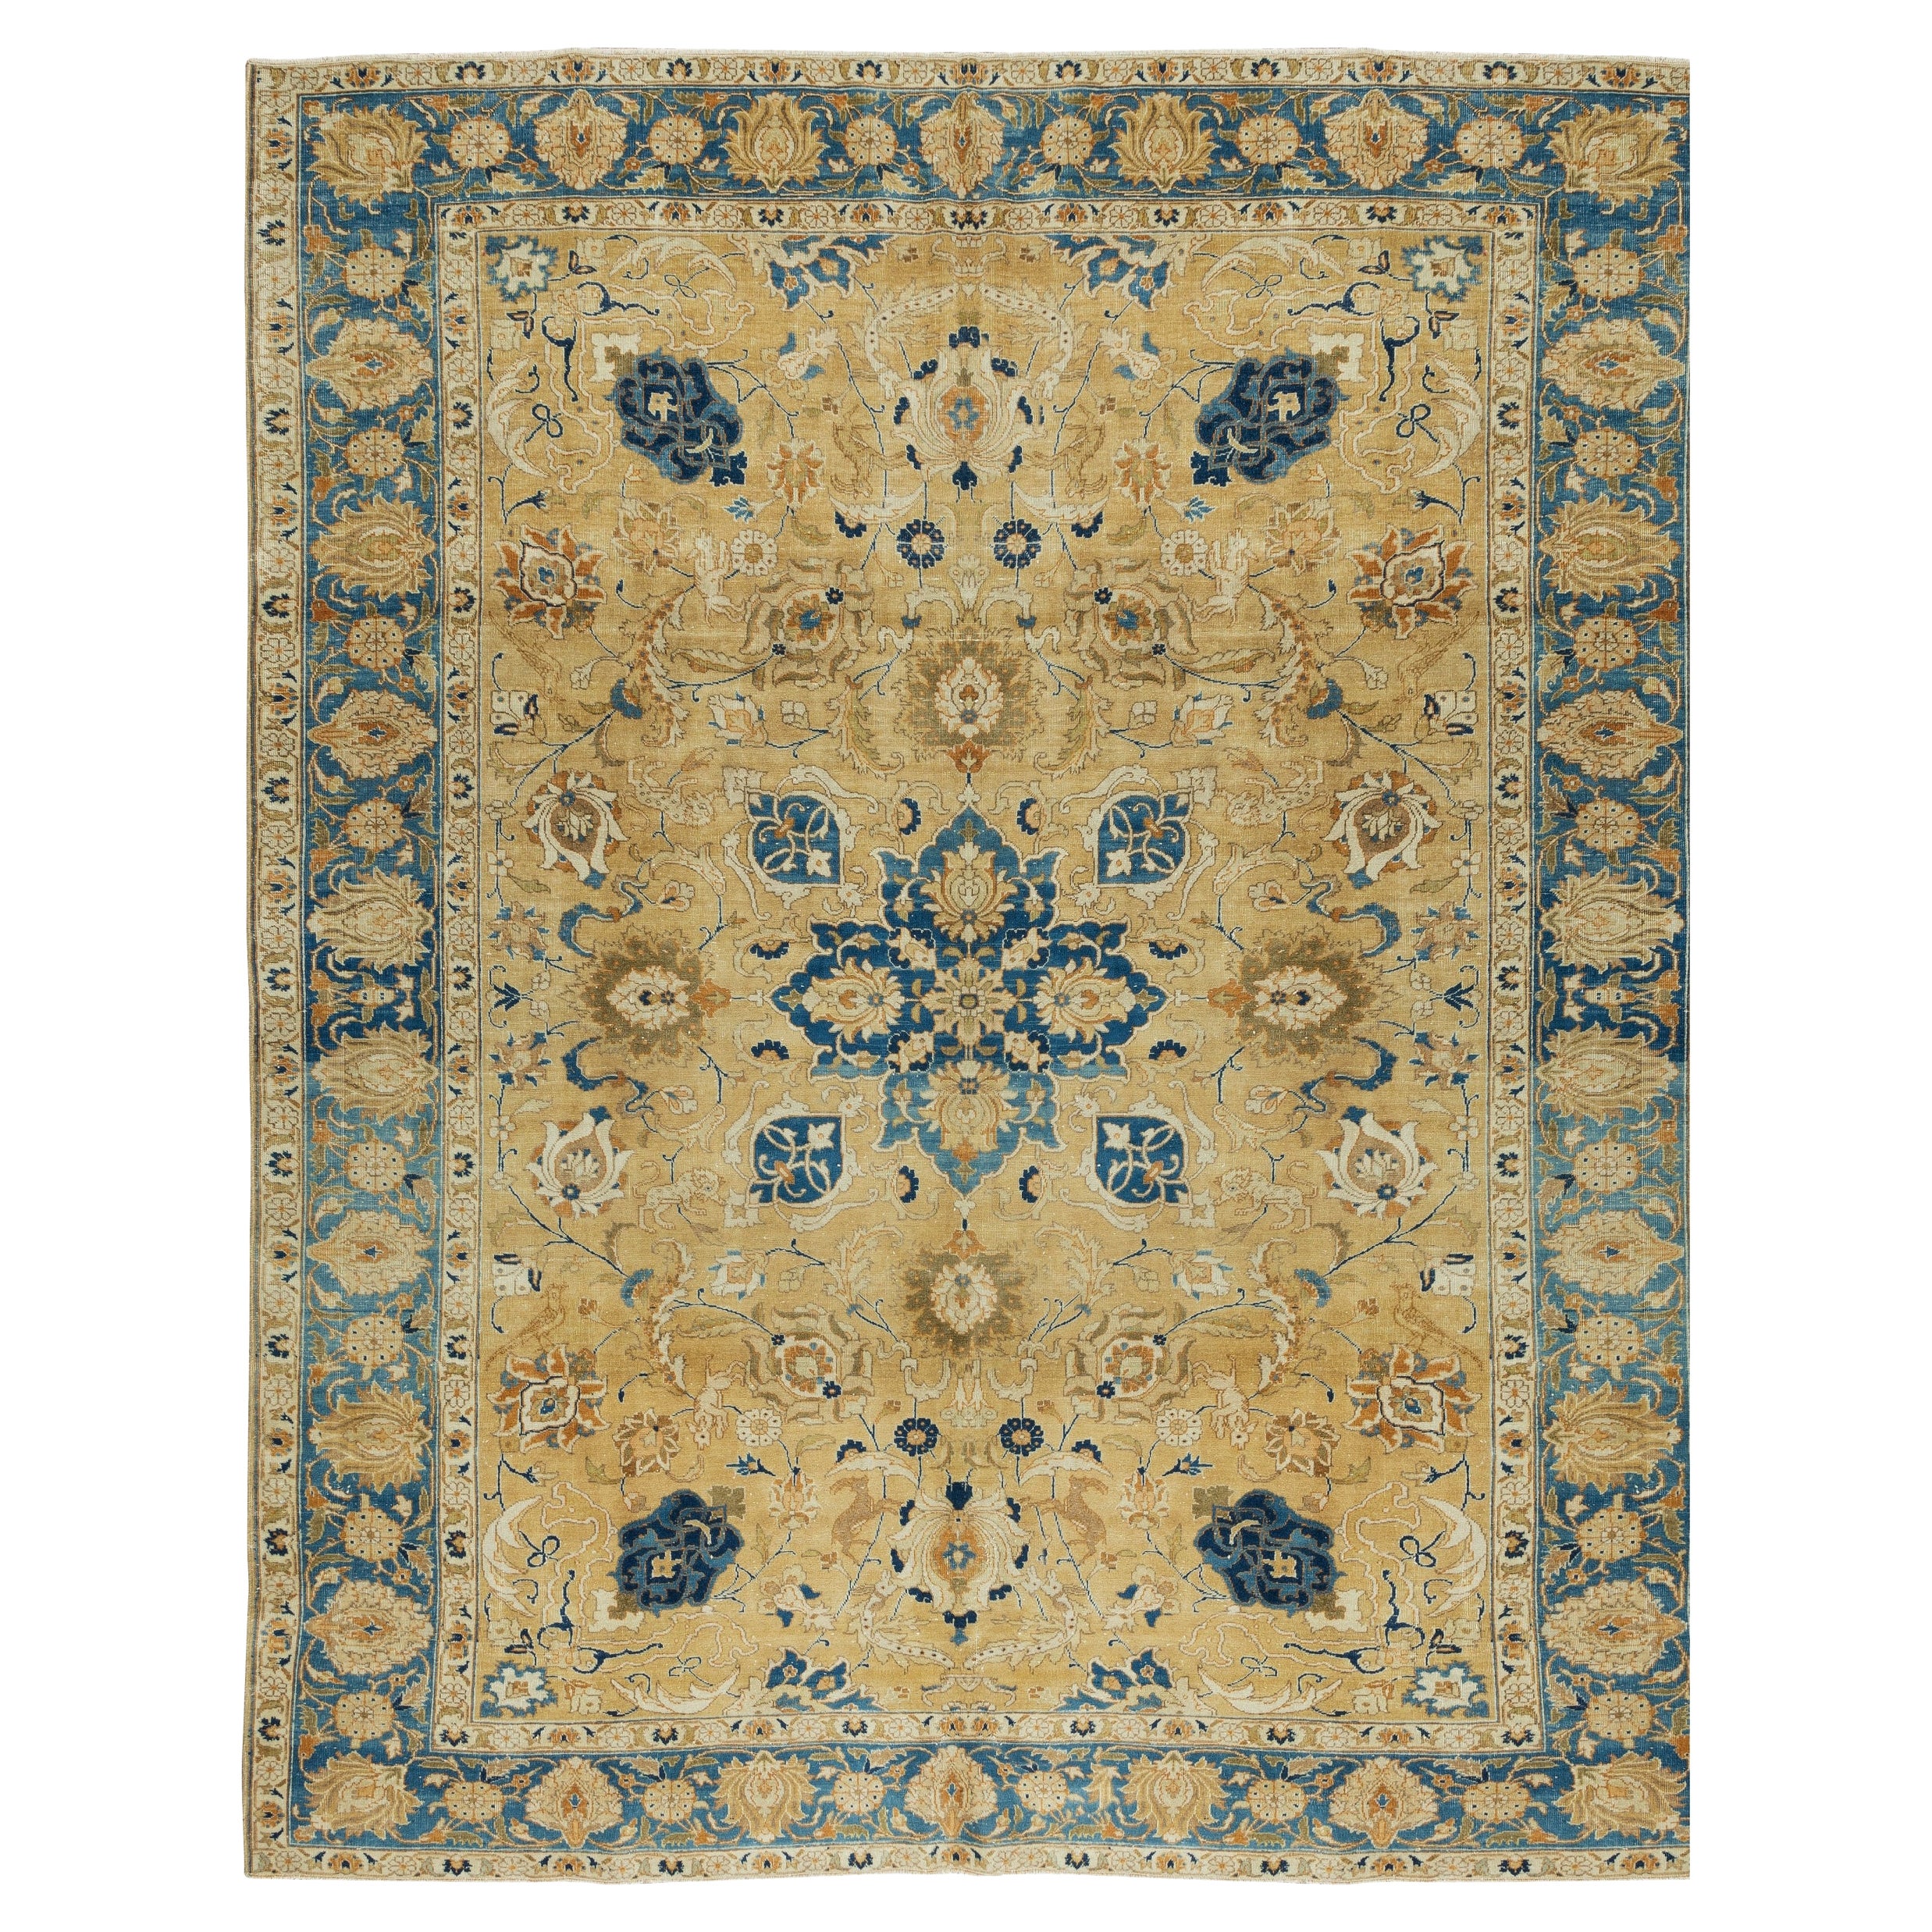 8x11 Ft Vintage Handmade Area Rug in Beige & Blue, Floral Pattern Turkish Carpet